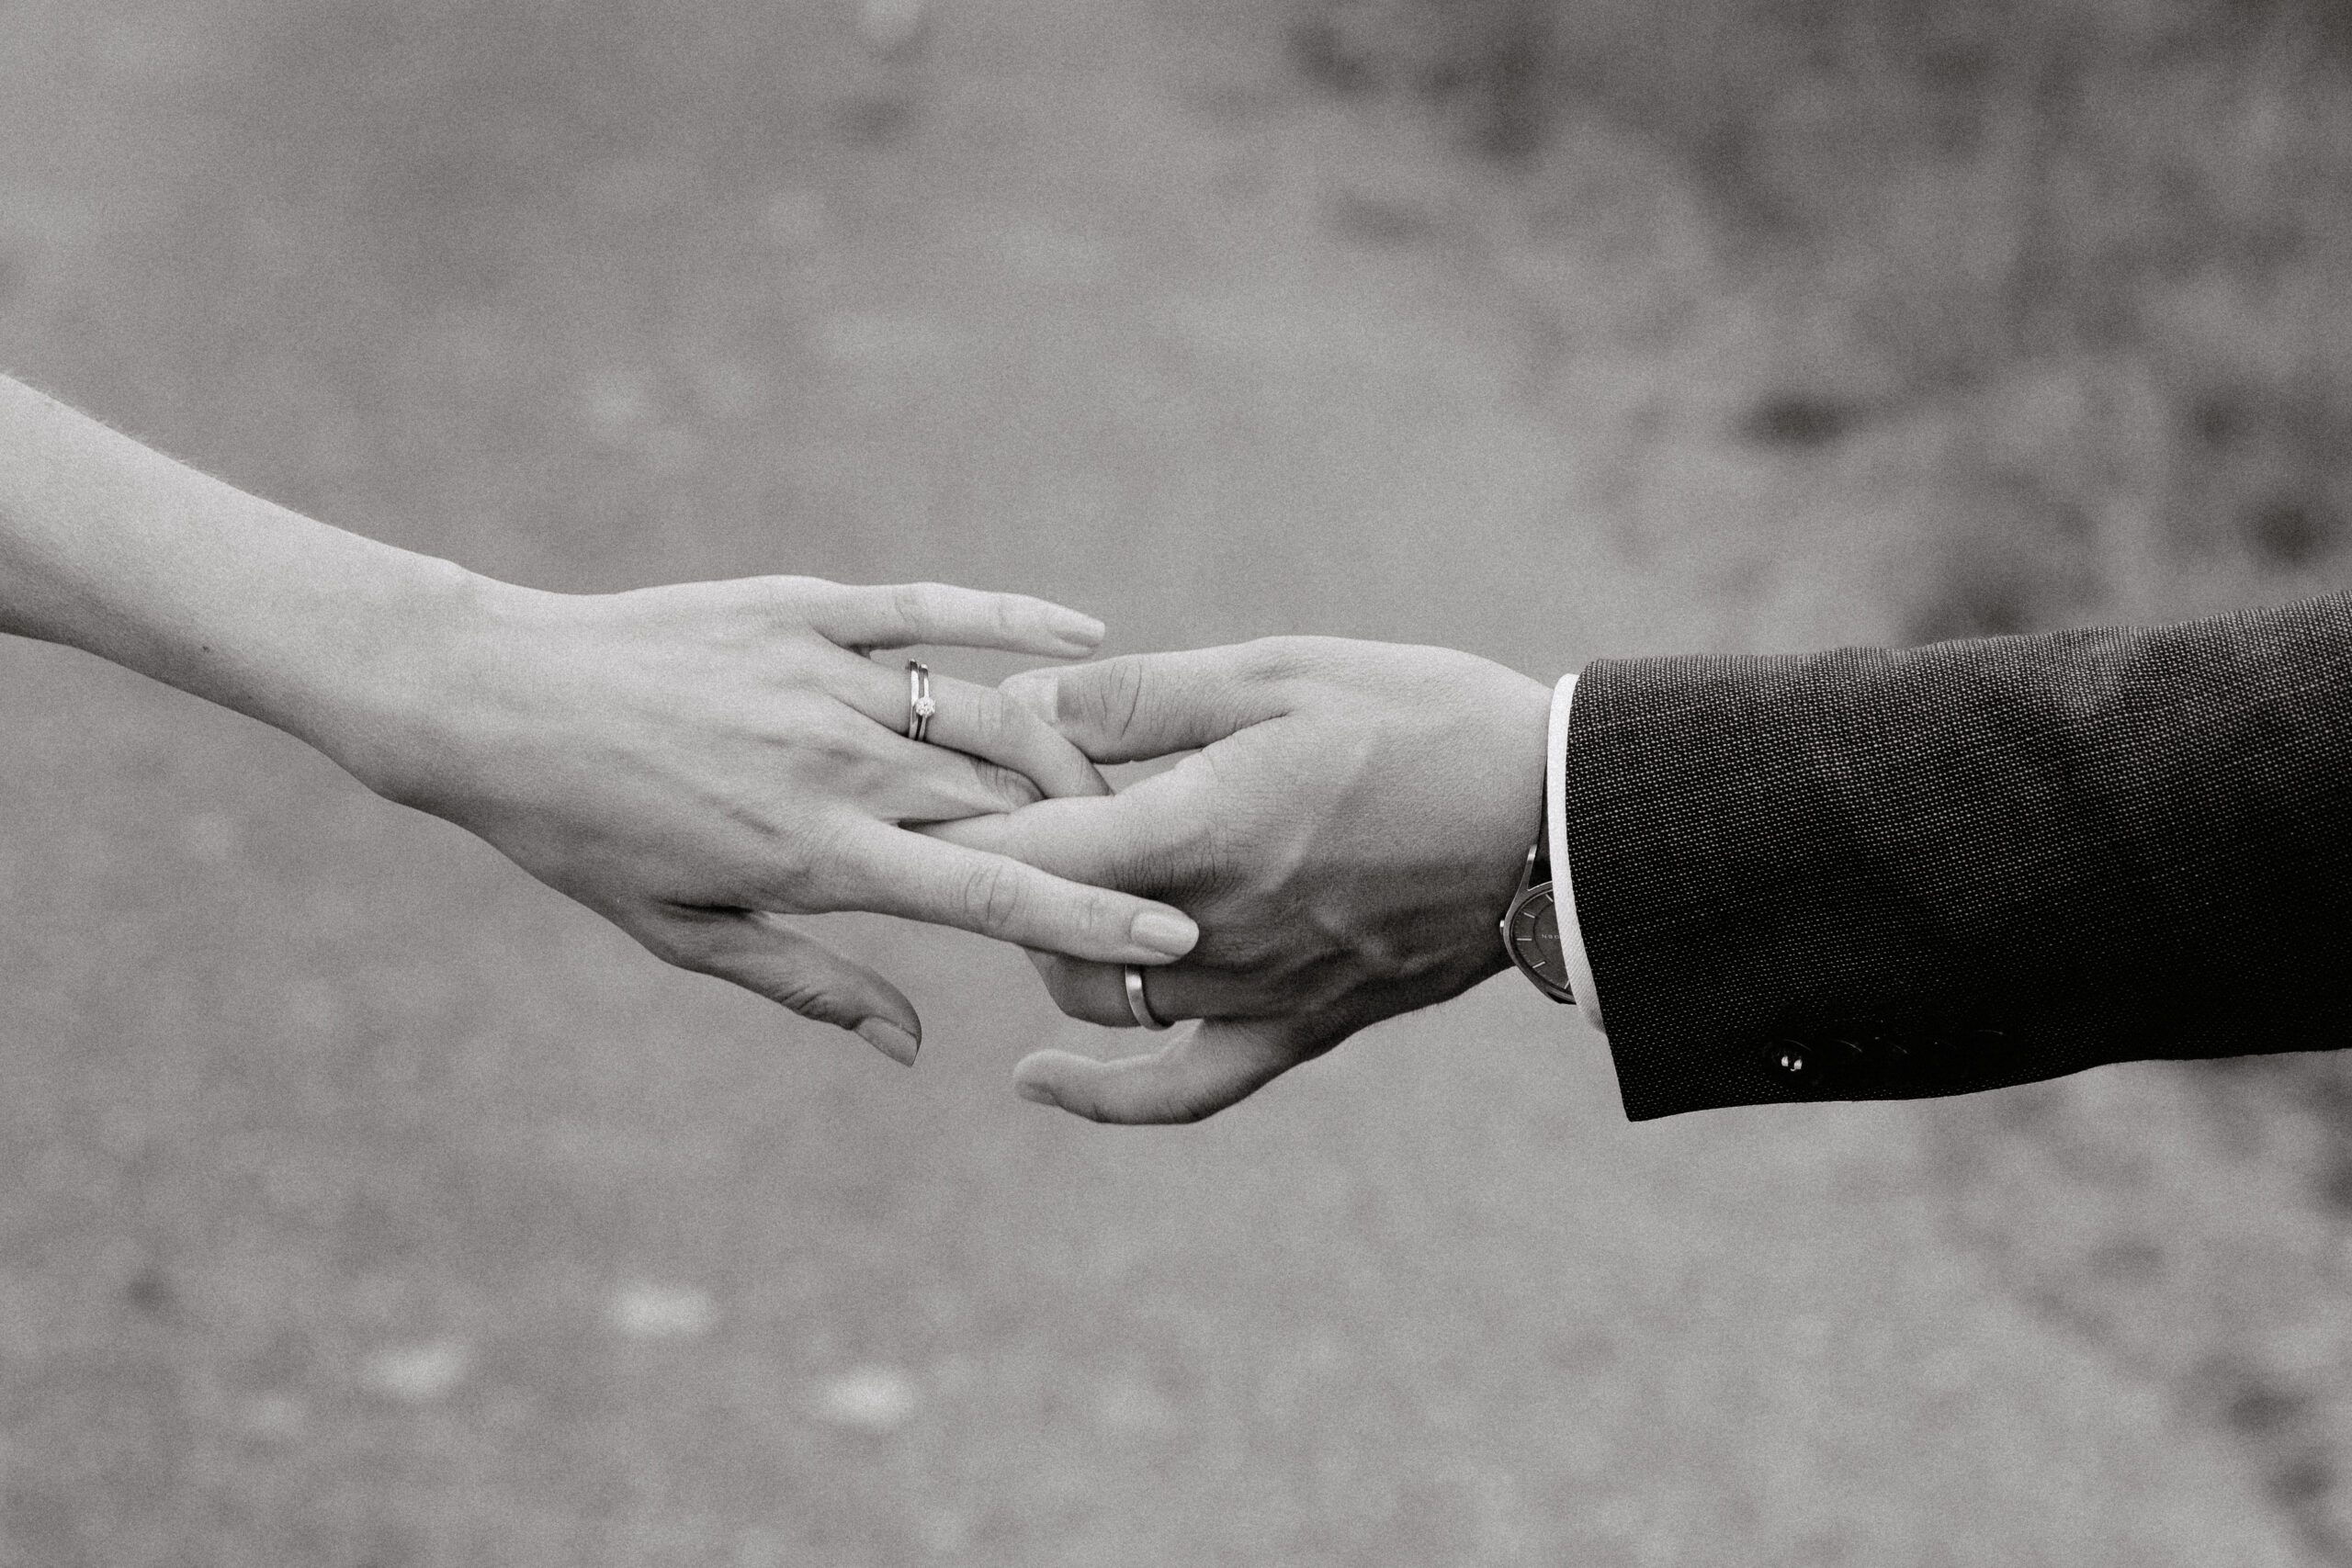 Detailaufnahme der Hände des Brautpaares mit den Eheringen und die schön gemachten Nägel der Braut sind auch zu sehen. Bild in Schwarz weiß. Das Brautpaar spielt mit seinen Händen und hält sich dabei fest. Der Ehebund wird dabei geschürt.